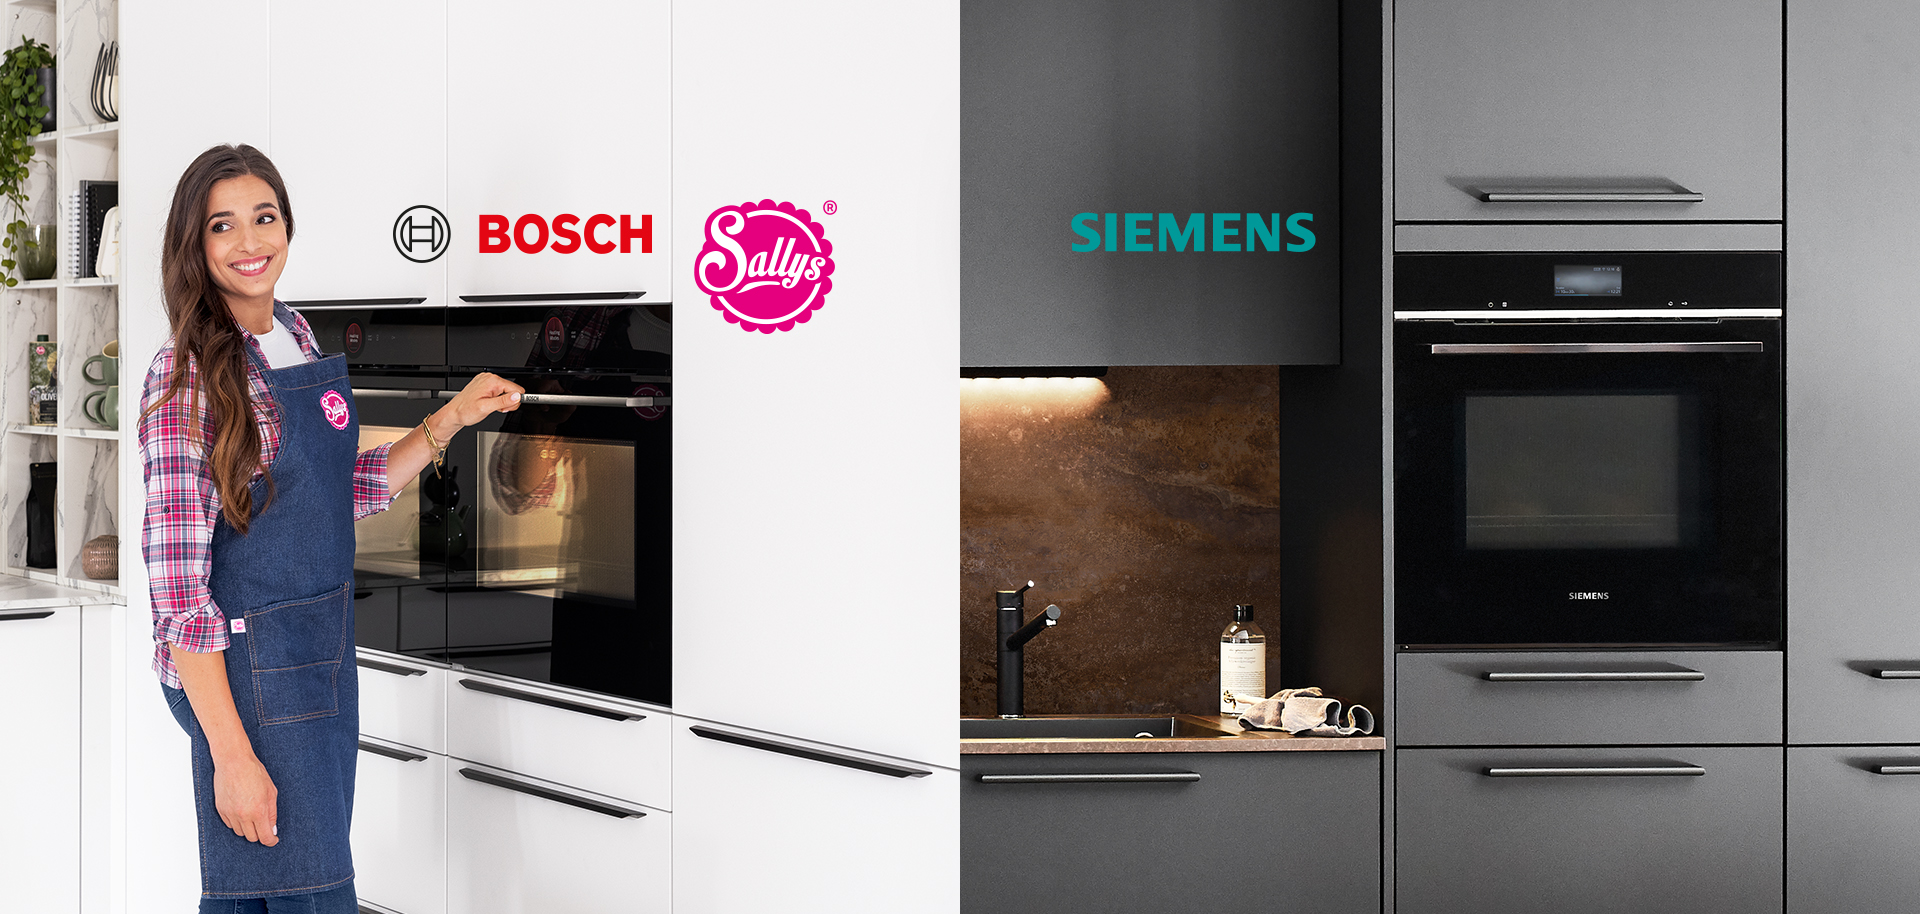 Una persona sonriente con un delantal presenta un horno Bosch, mientras que en el lado opuesto se muestra una cocina moderna de Siemens con electrodomésticos elegantes.